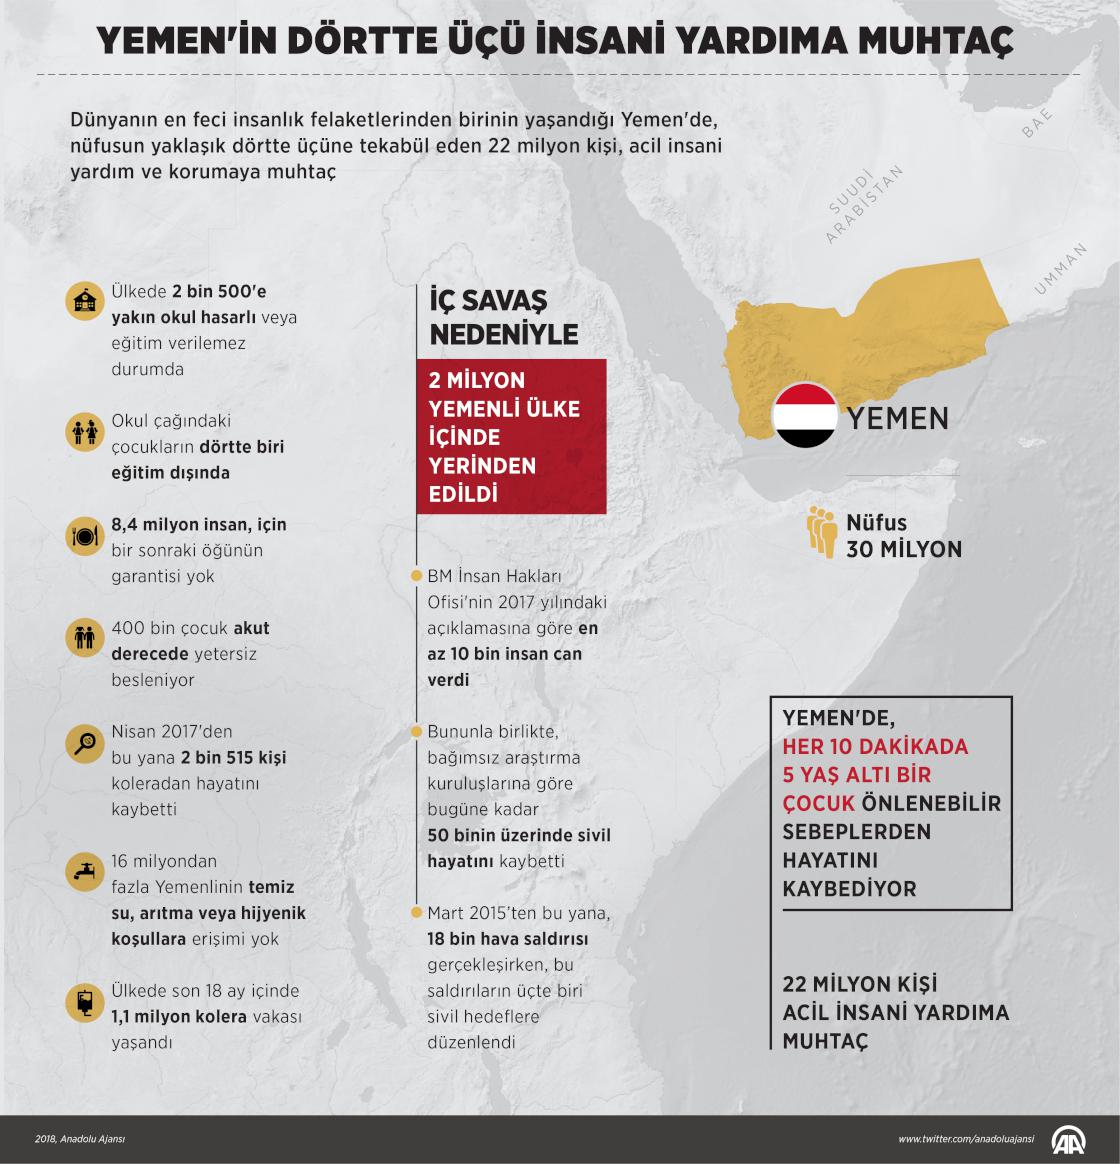 Yemen'in dörtte üçü acil insani yardıma muhtaç